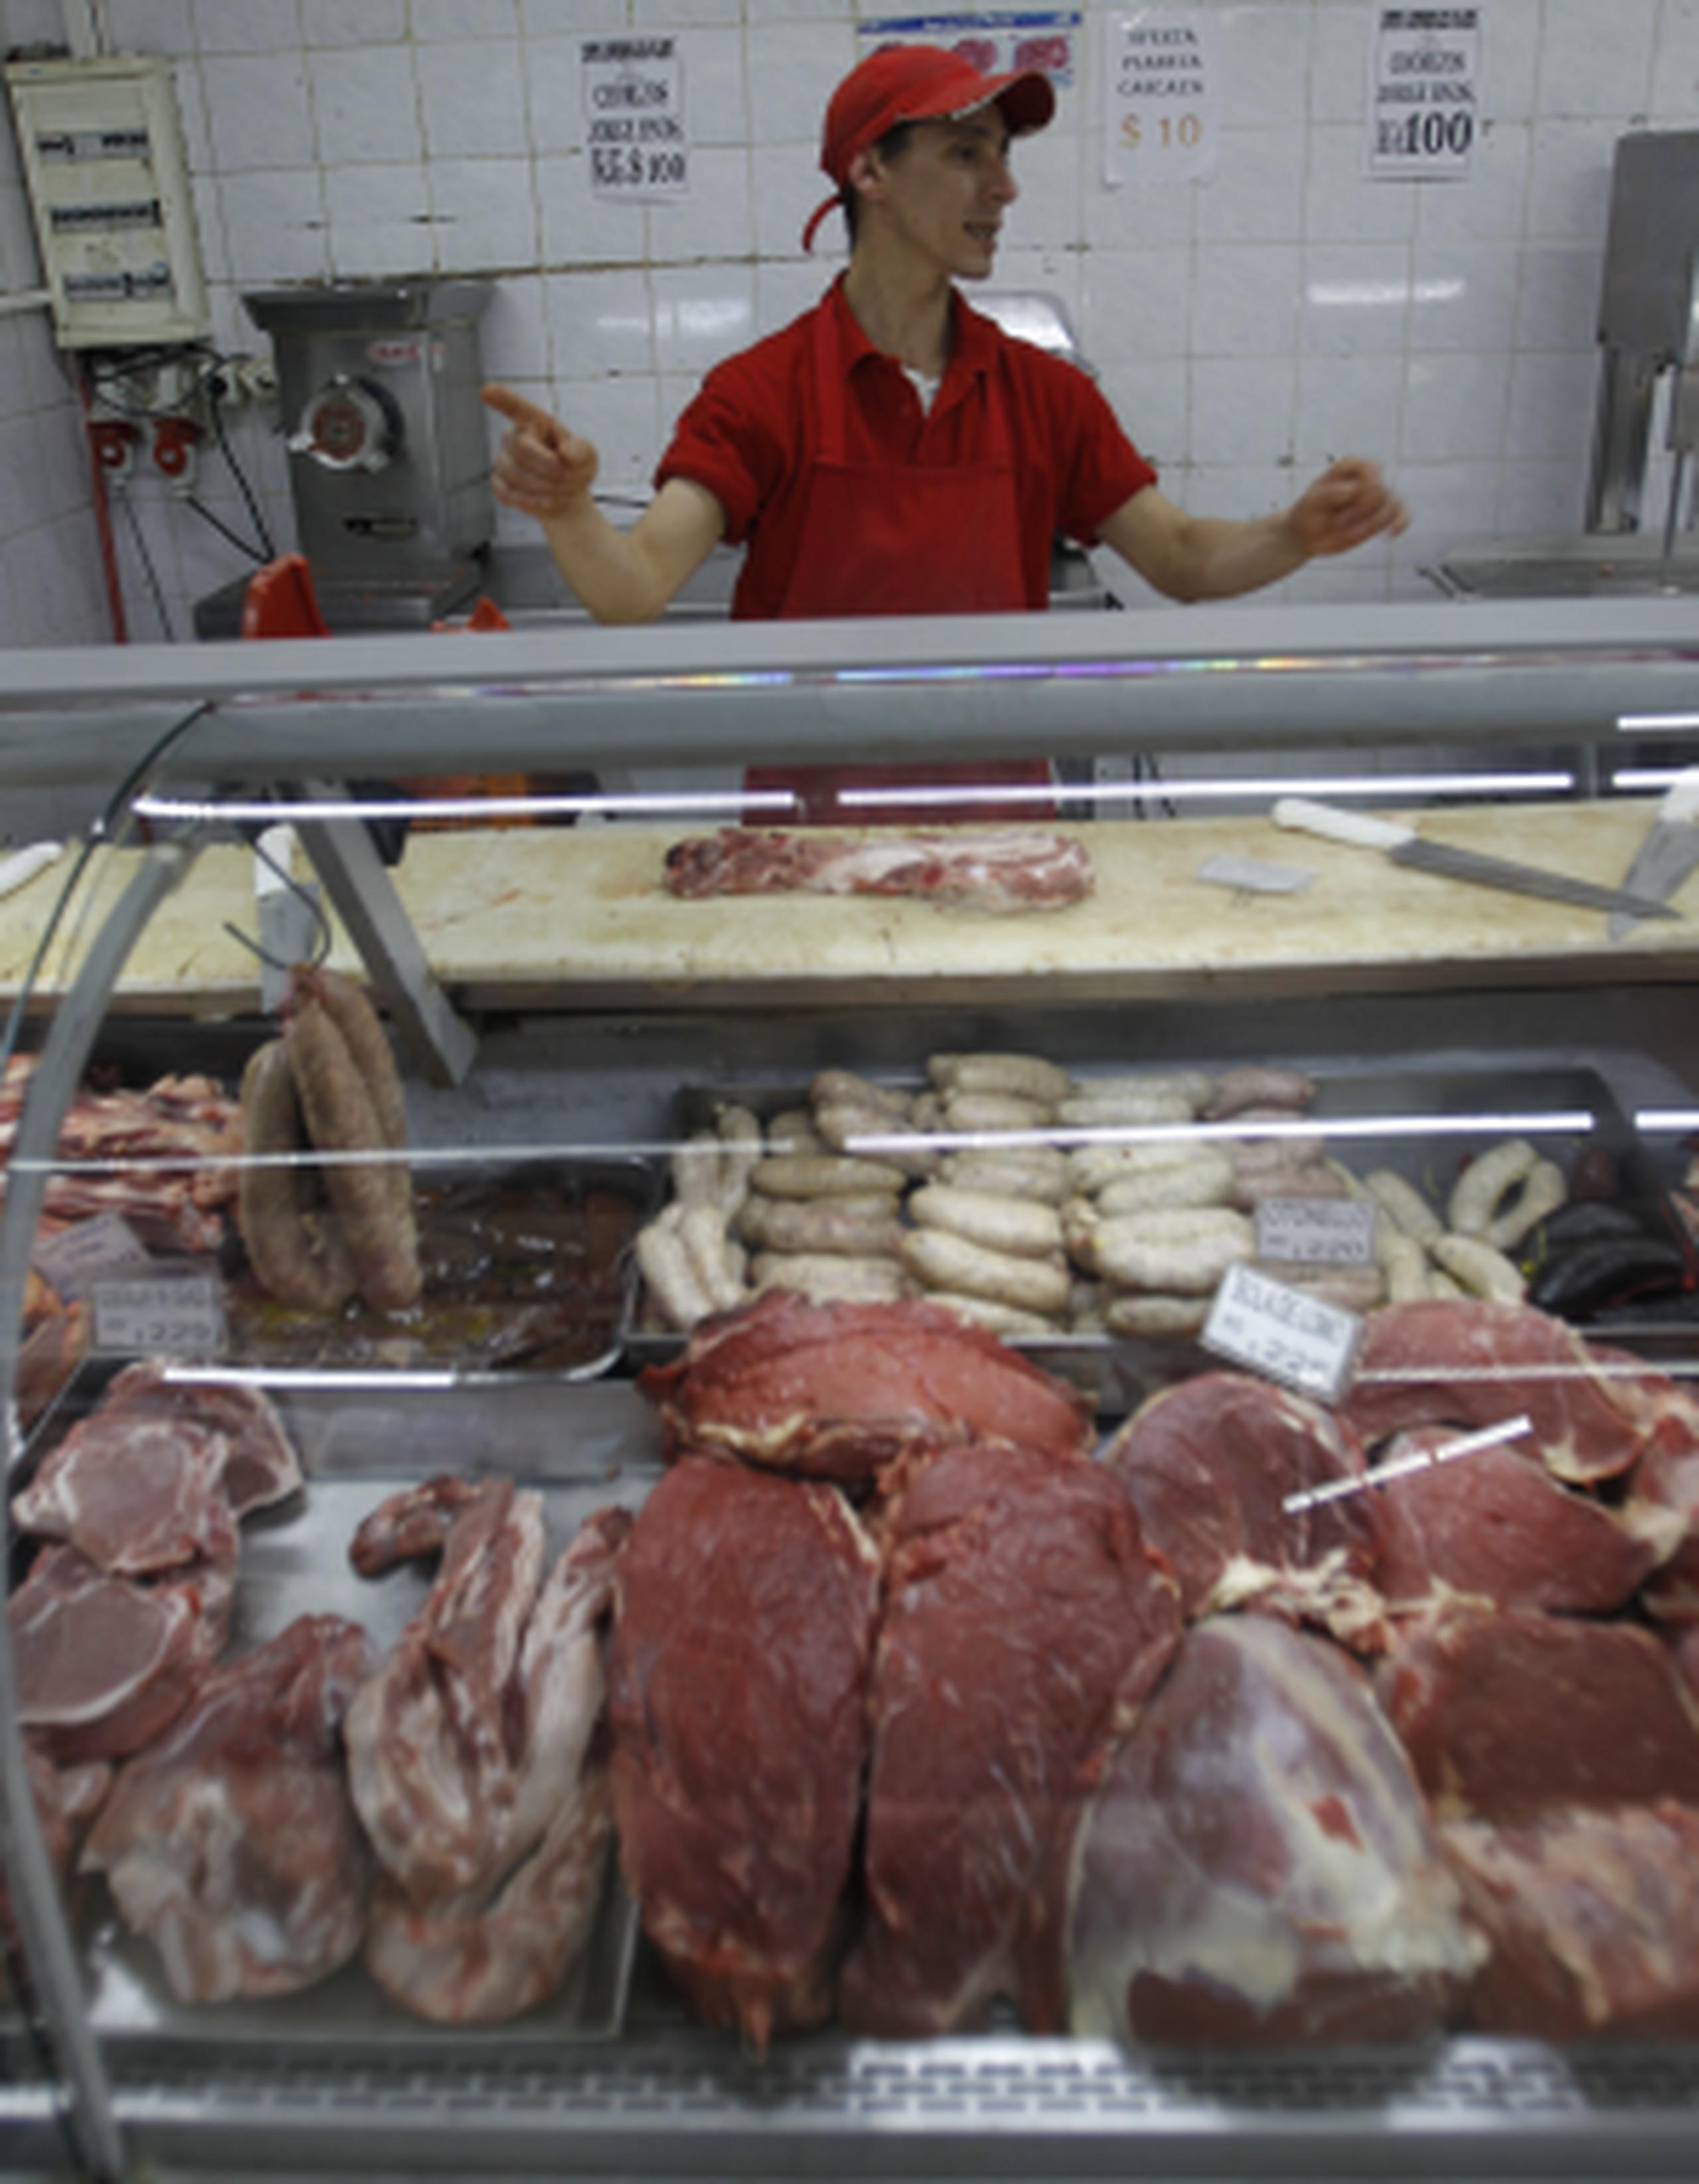 Los carniceros de Uruguay cuestionan si el estudio evaluó carnes de su país, que son criadas en mejores condiciones que en Estados Unidos. (EFE)